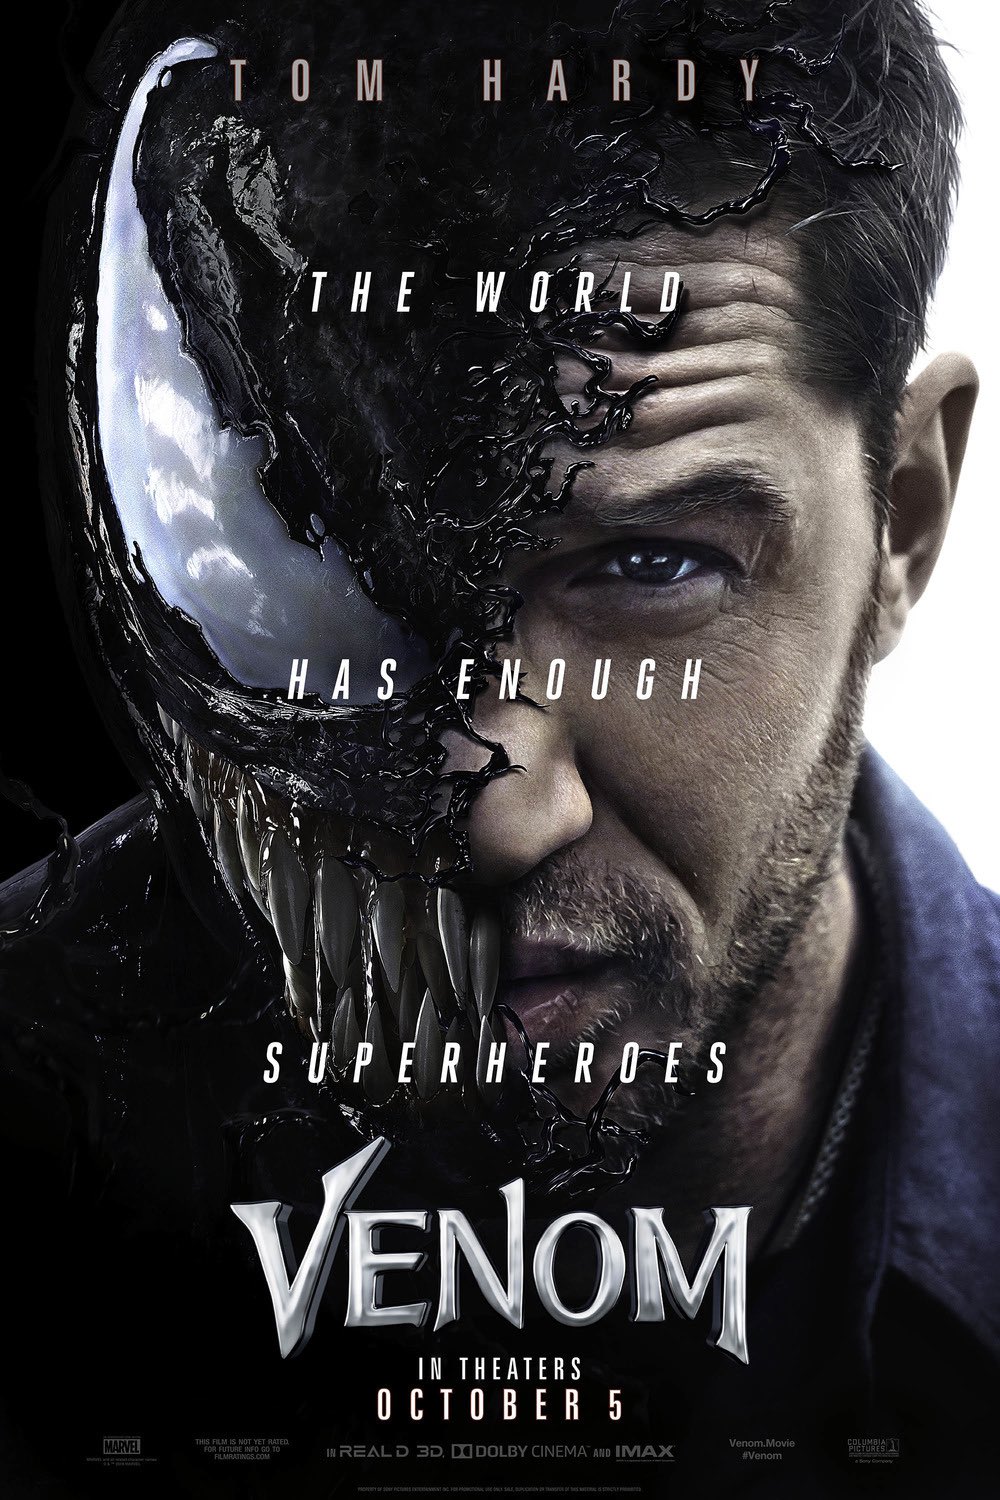 Diz Auf Twitter ヴェノムのポスター どれもかっこいい 一番楽しみにしてる映画 Venommovie Venom ヴェノム Venommoviejp T Co 9da0sqhngh Twitter